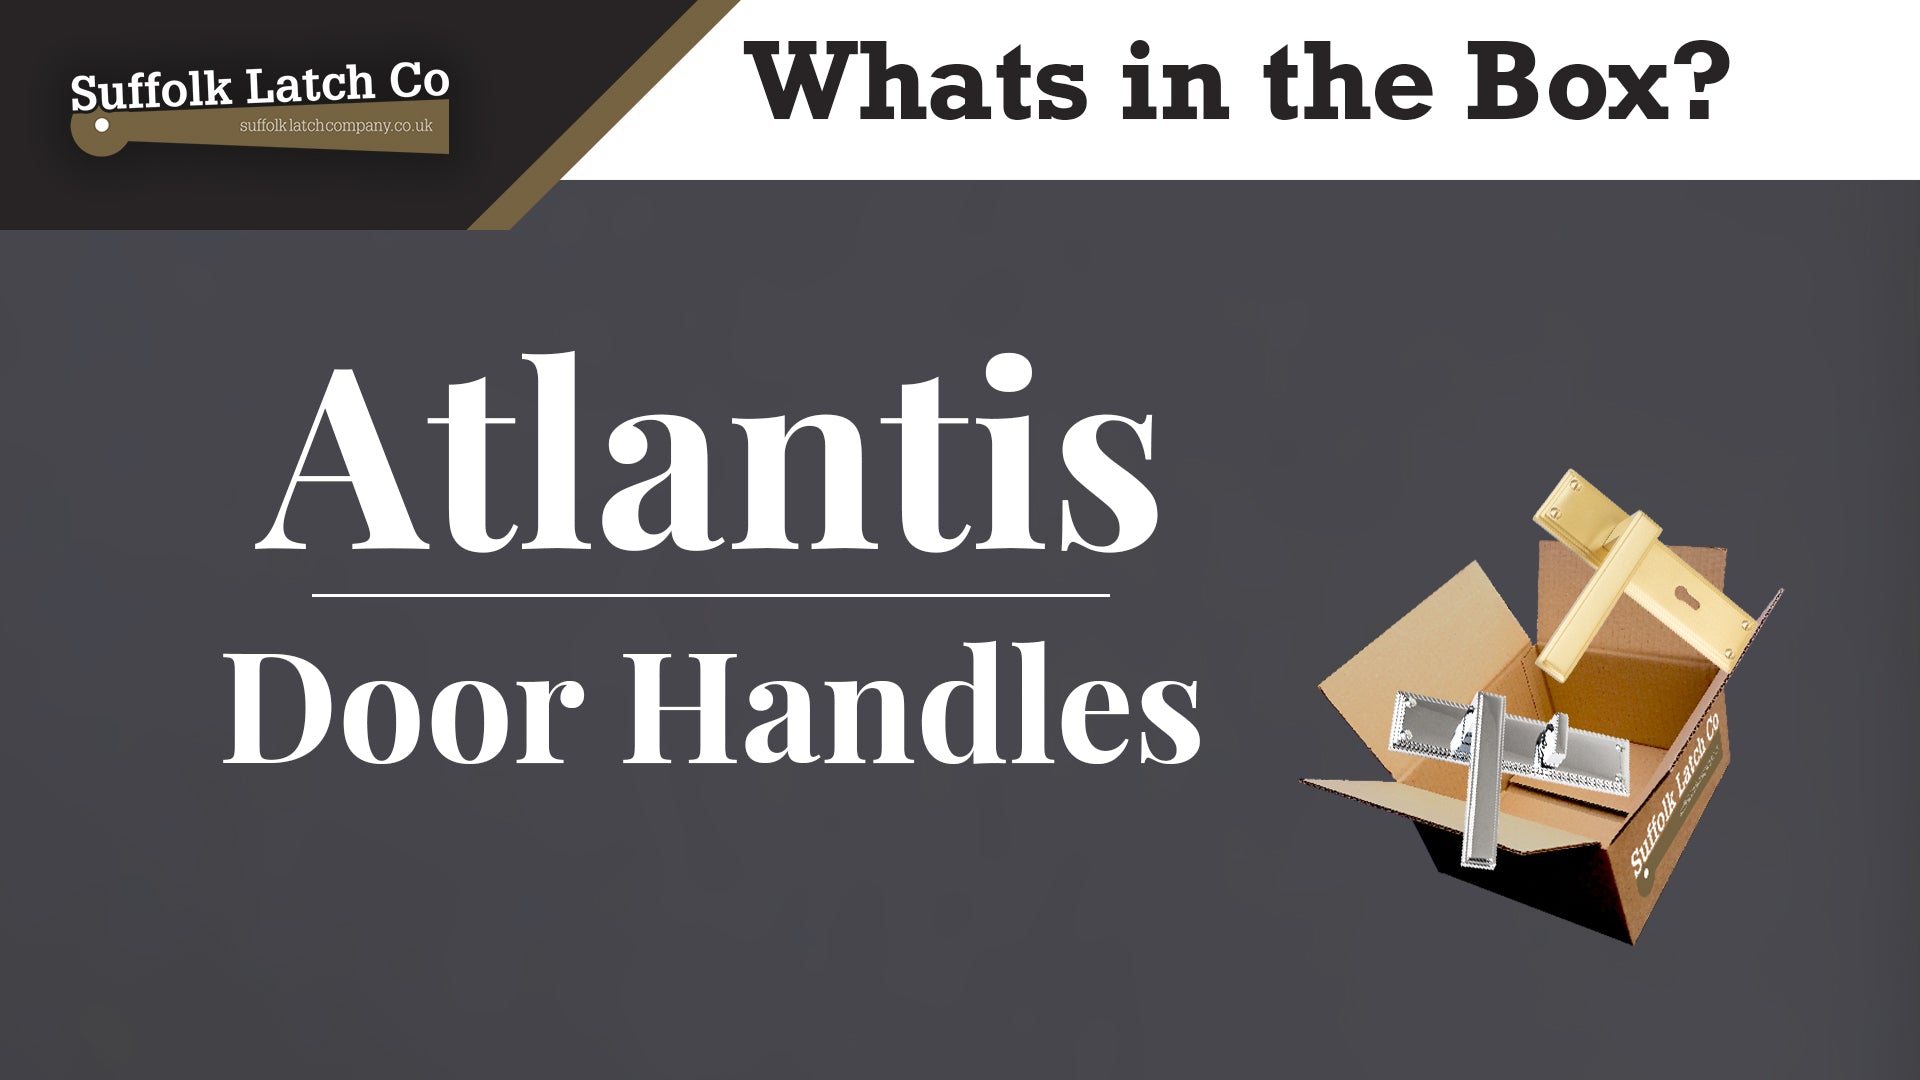 What's in the box: Atlantis Door Handles